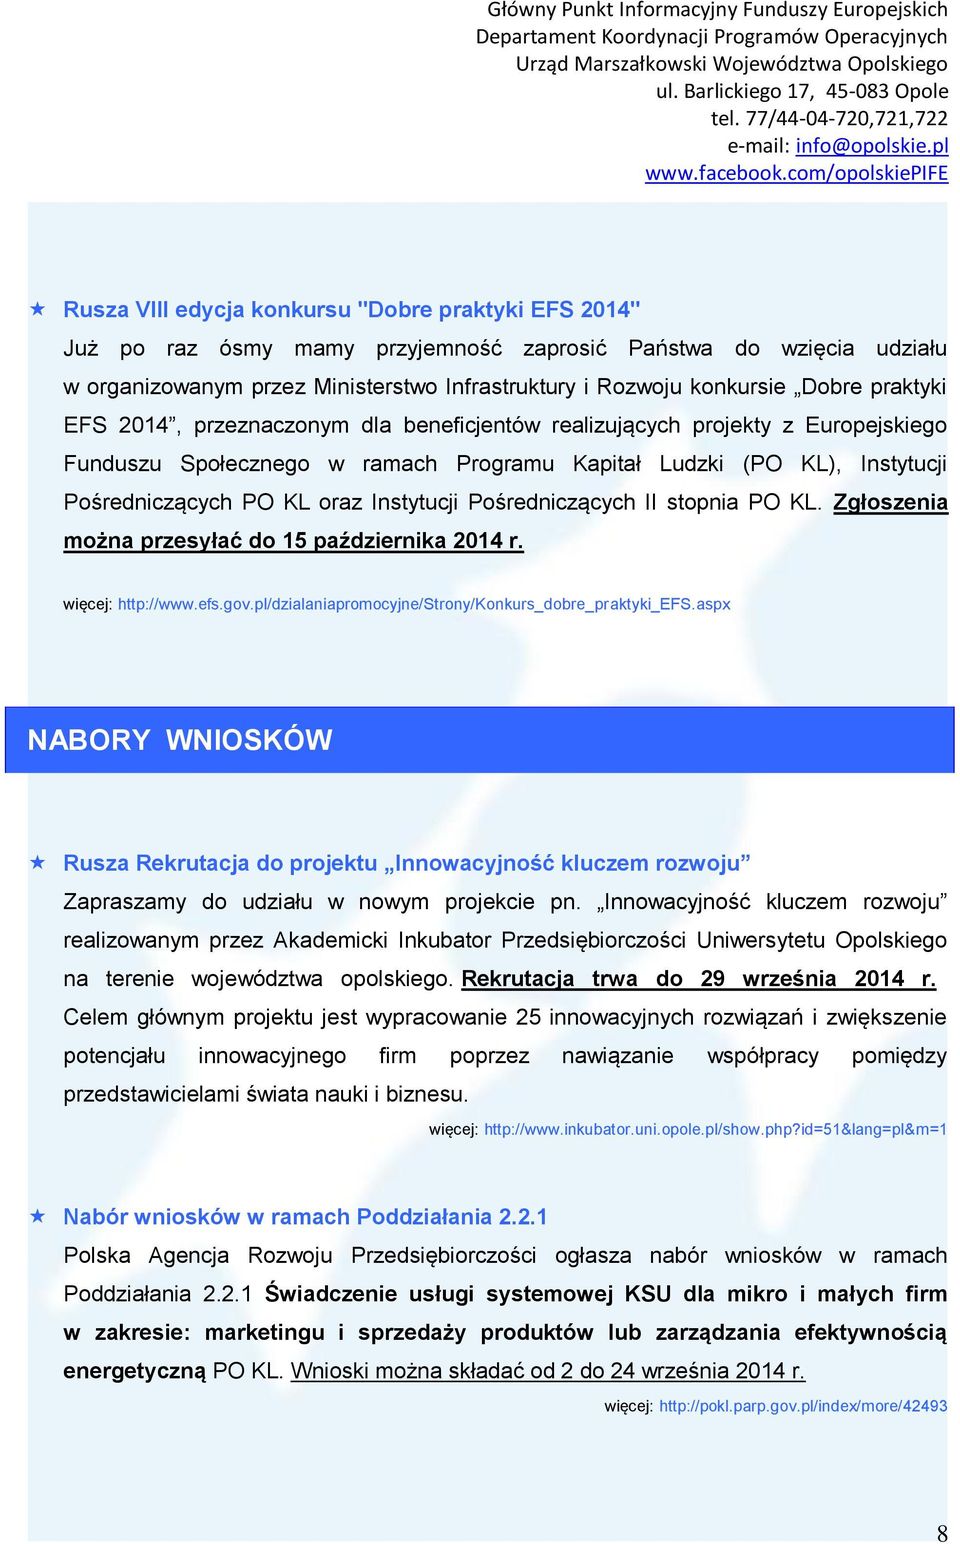 Instytucji Pośredniczących II stopnia PO KL. Zgłoszenia można przesyłać do 15 października 2014 r. więcej: http://www.efs.gov.pl/dzialaniapromocyjne/strony/konkurs_dobre_praktyki_efs.